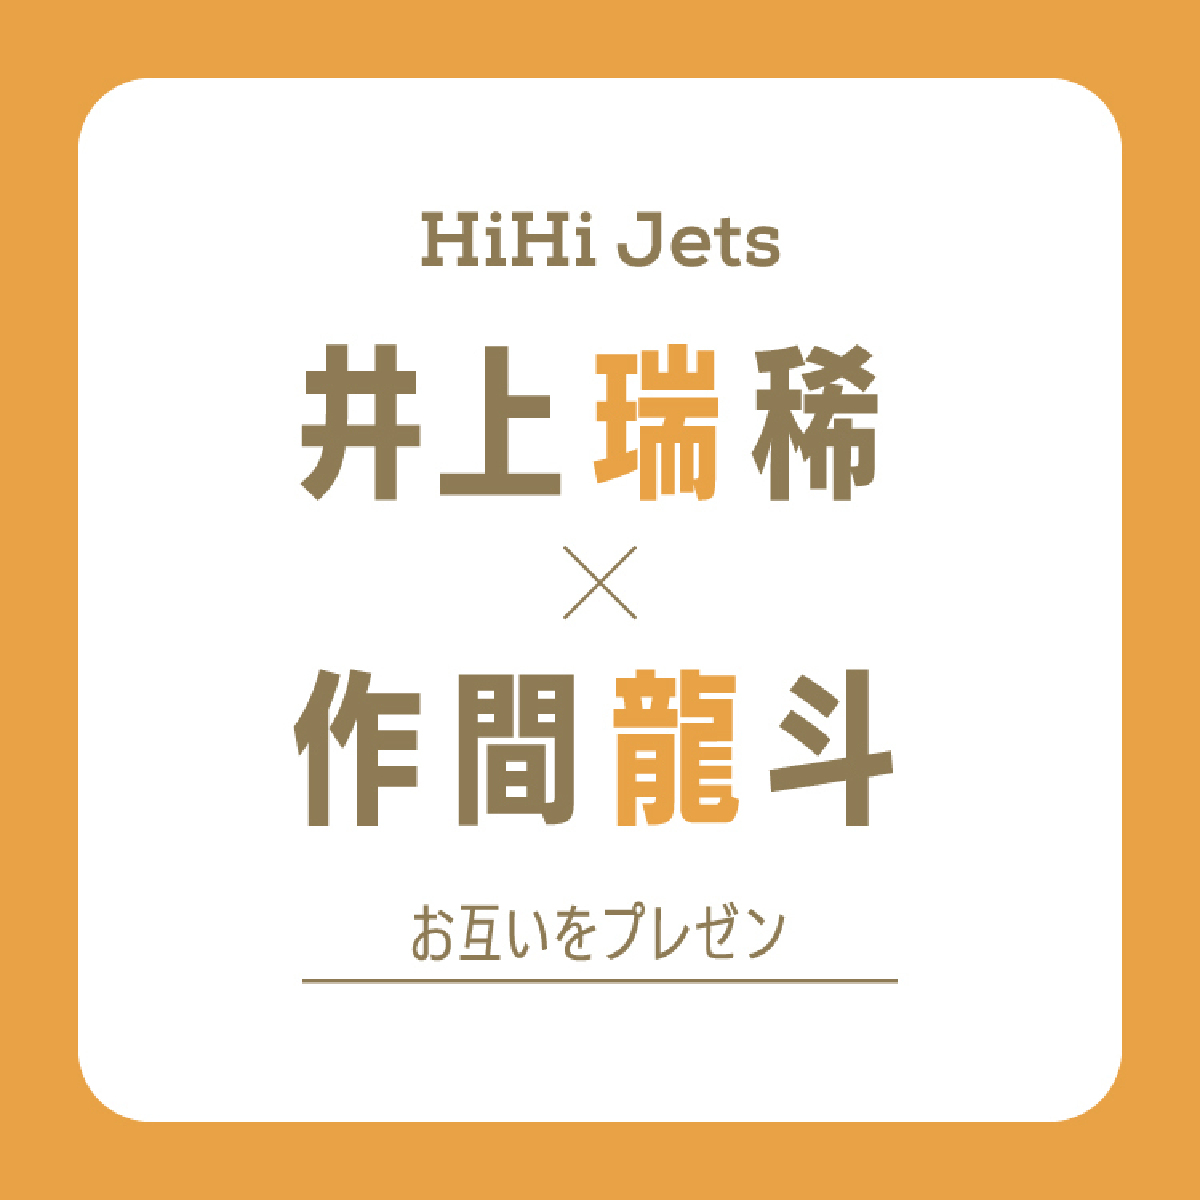 【HiHi Jets】#さくみずがお互いをプレゼン。作間龍斗から見た井上瑞稀の弱点は「照れ屋さんでほめられるのが苦手。あー可愛い」